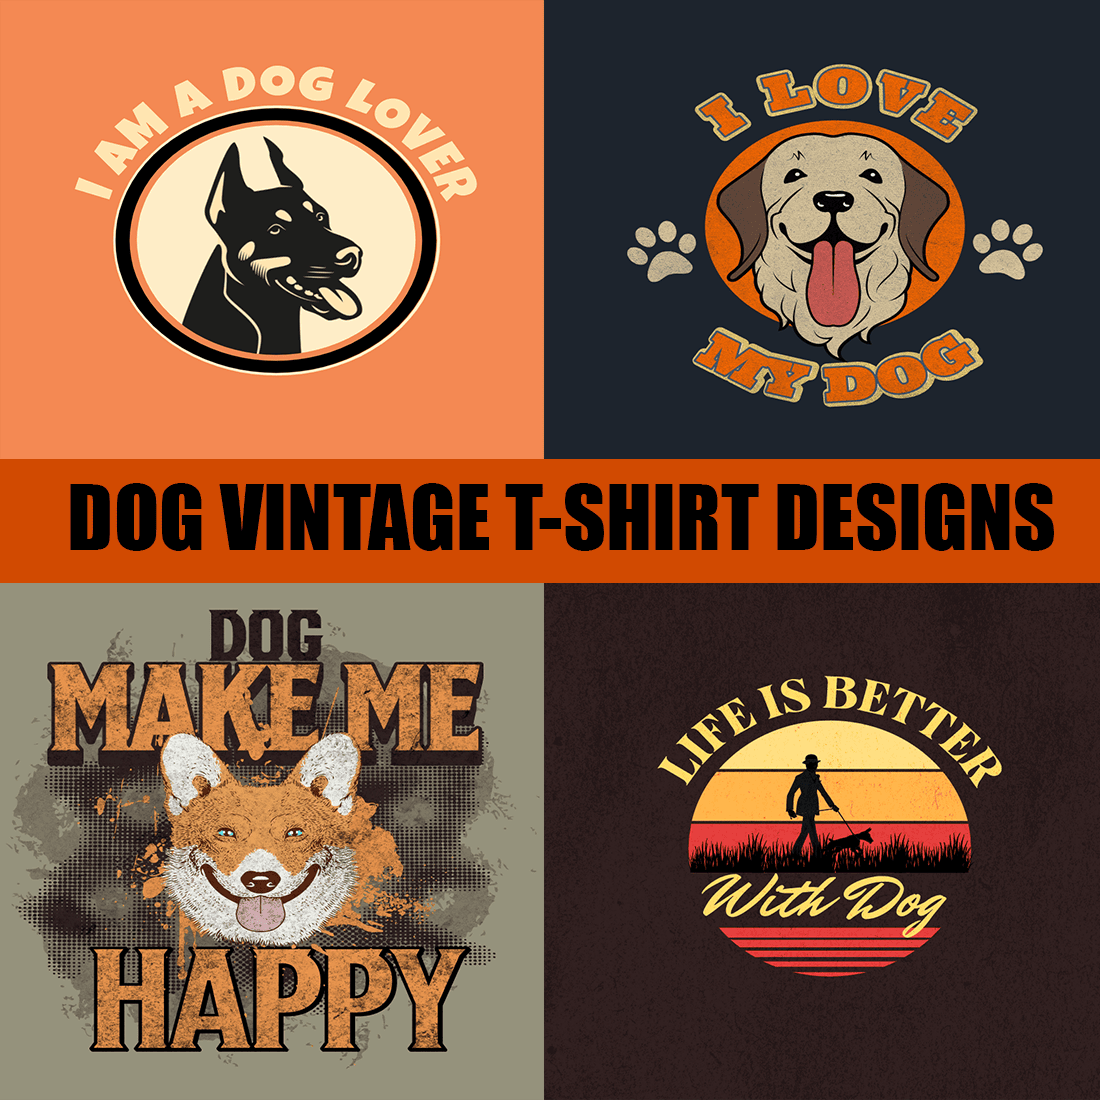 Dog vintage T-shirt designs bundle cover image.